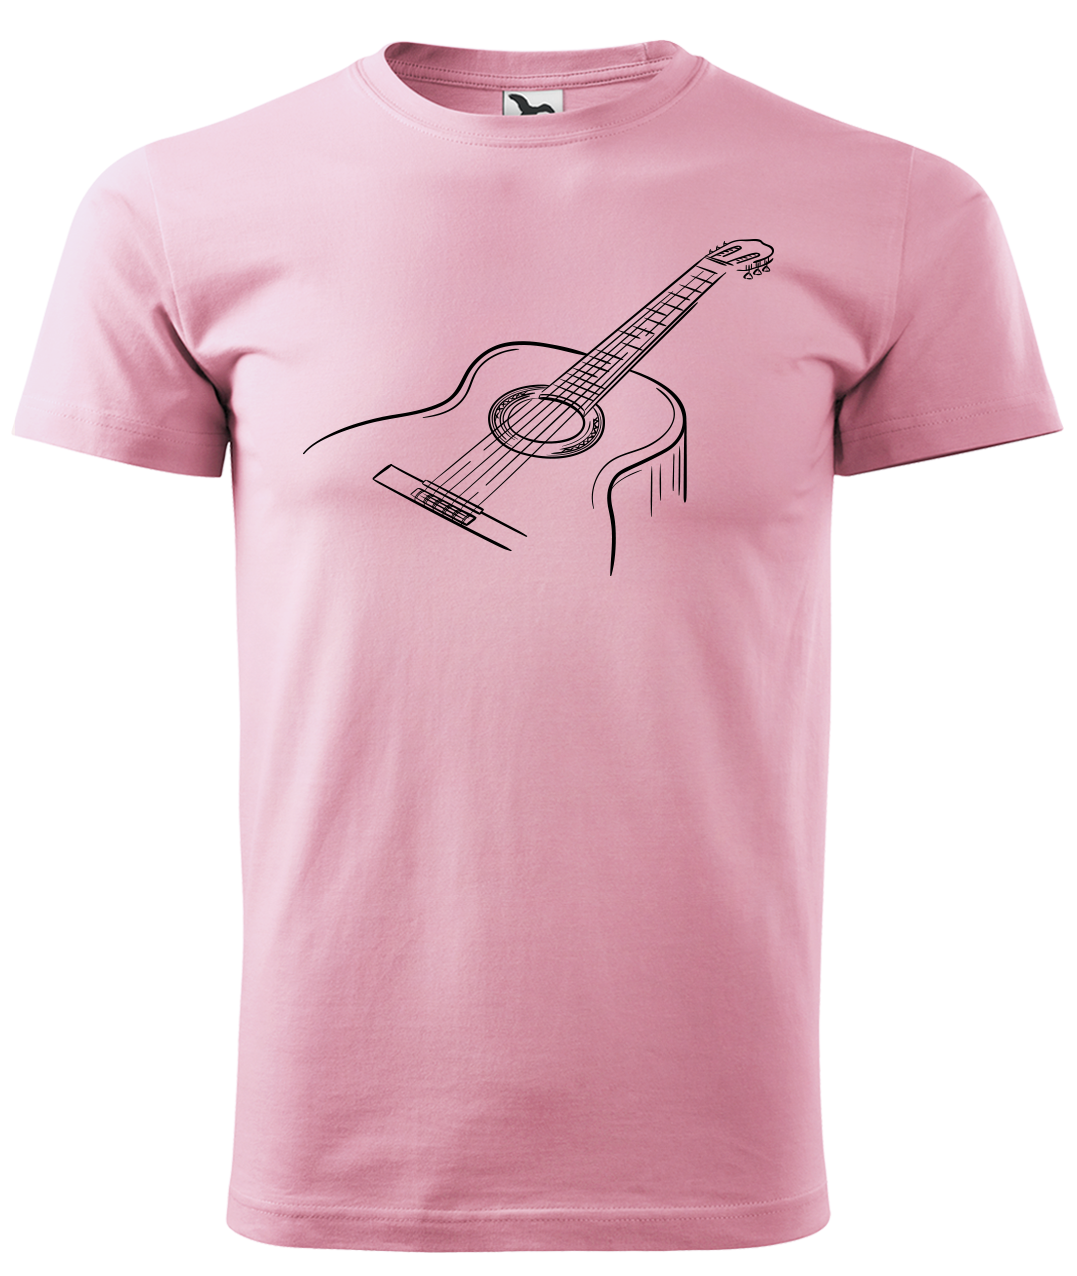 Dětské tričko s kytarou - Klasická kytara Velikost: 8 let / 134 cm, Barva: Růžová (30)